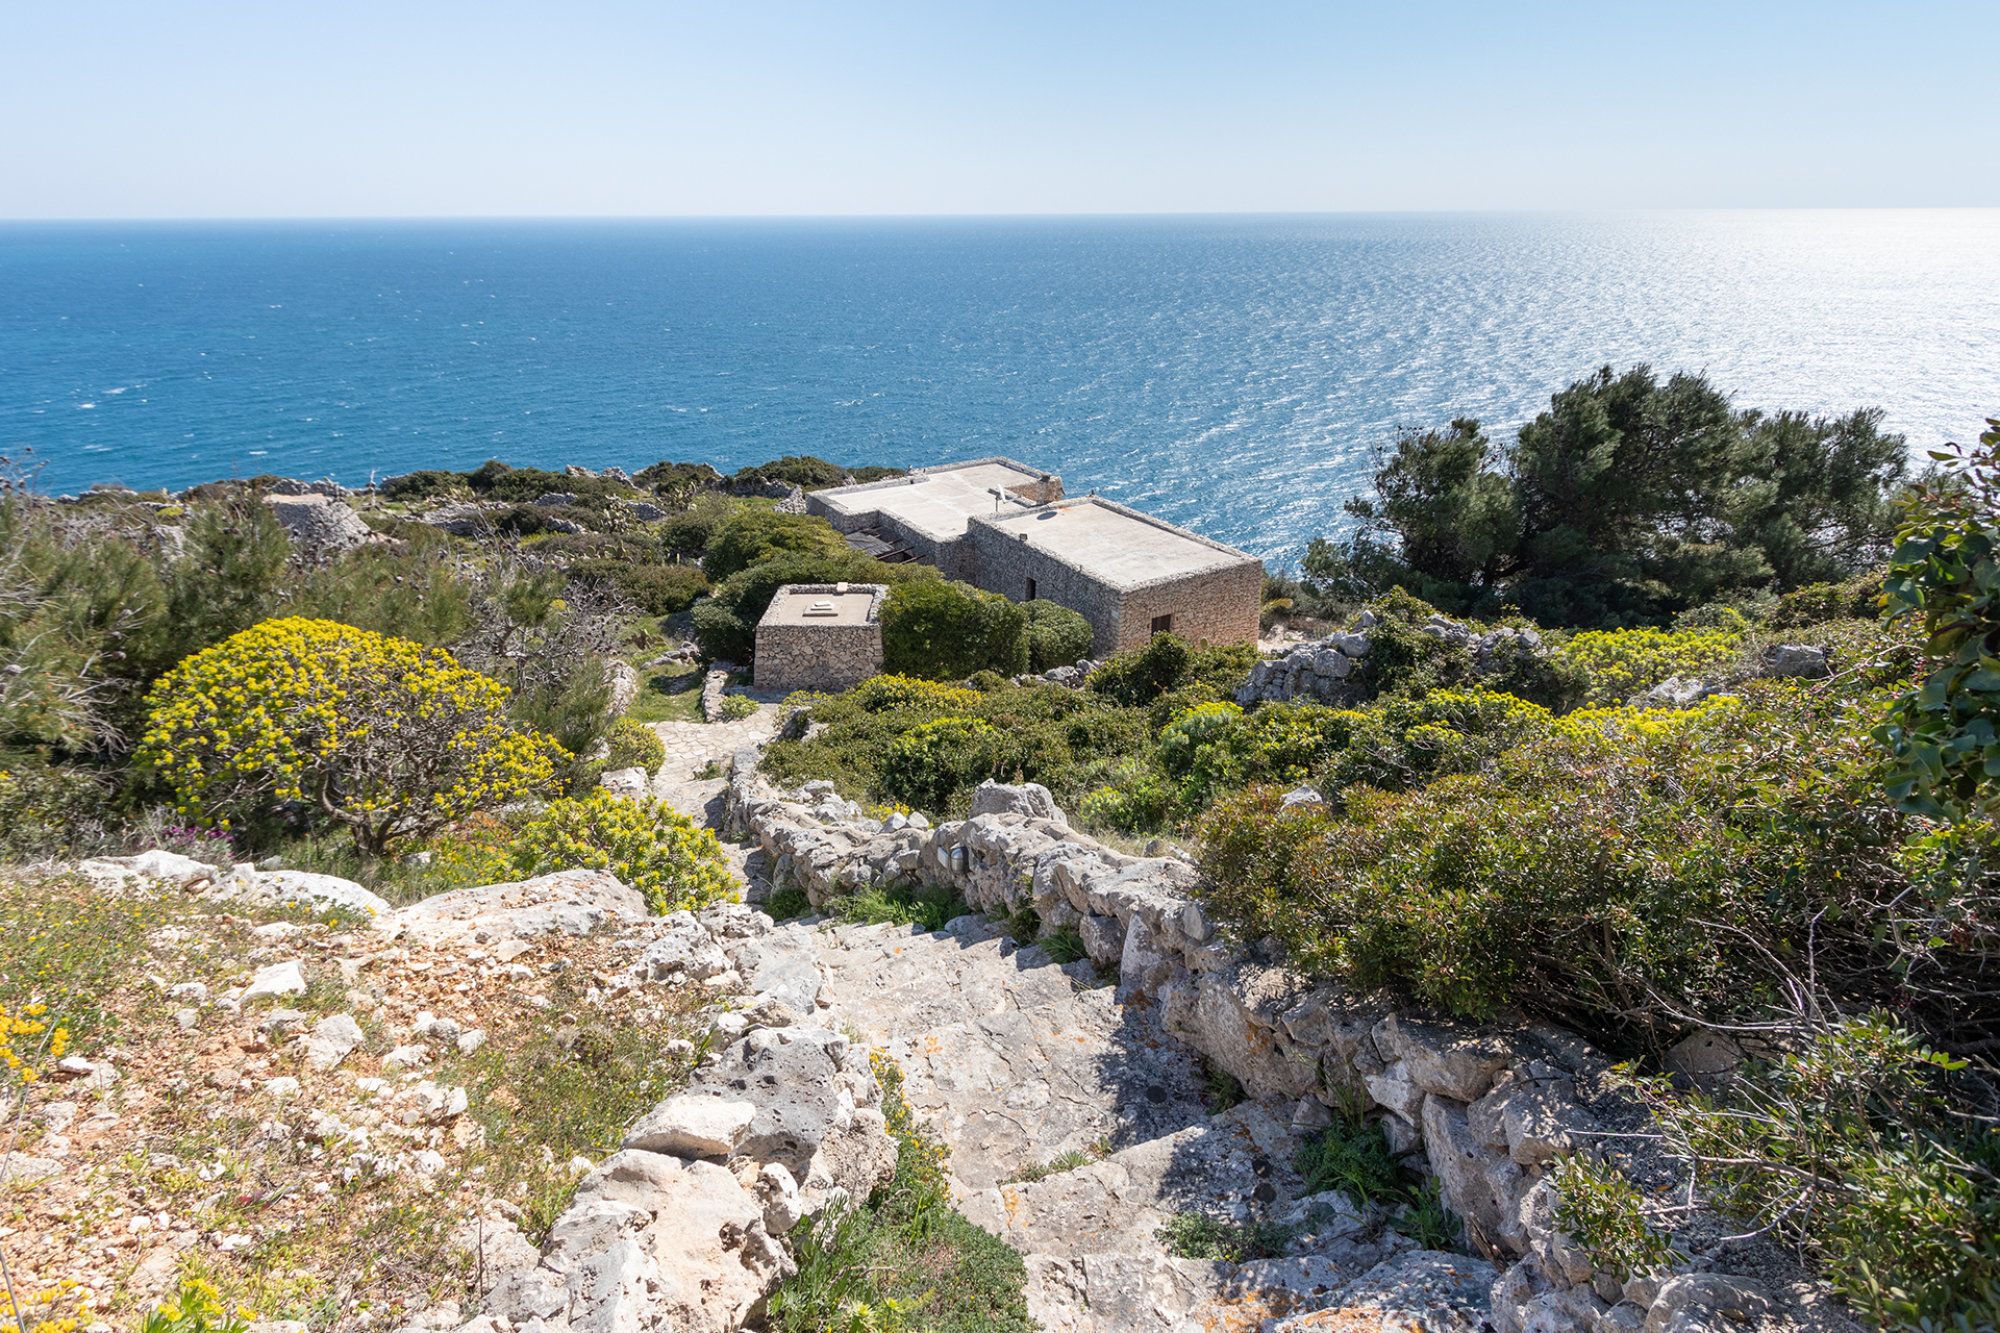 Villa con Piscina affacciata sul mare Adriatico, tra Santa Maria di Leuca e il Ciolo - Gagliano del Capo